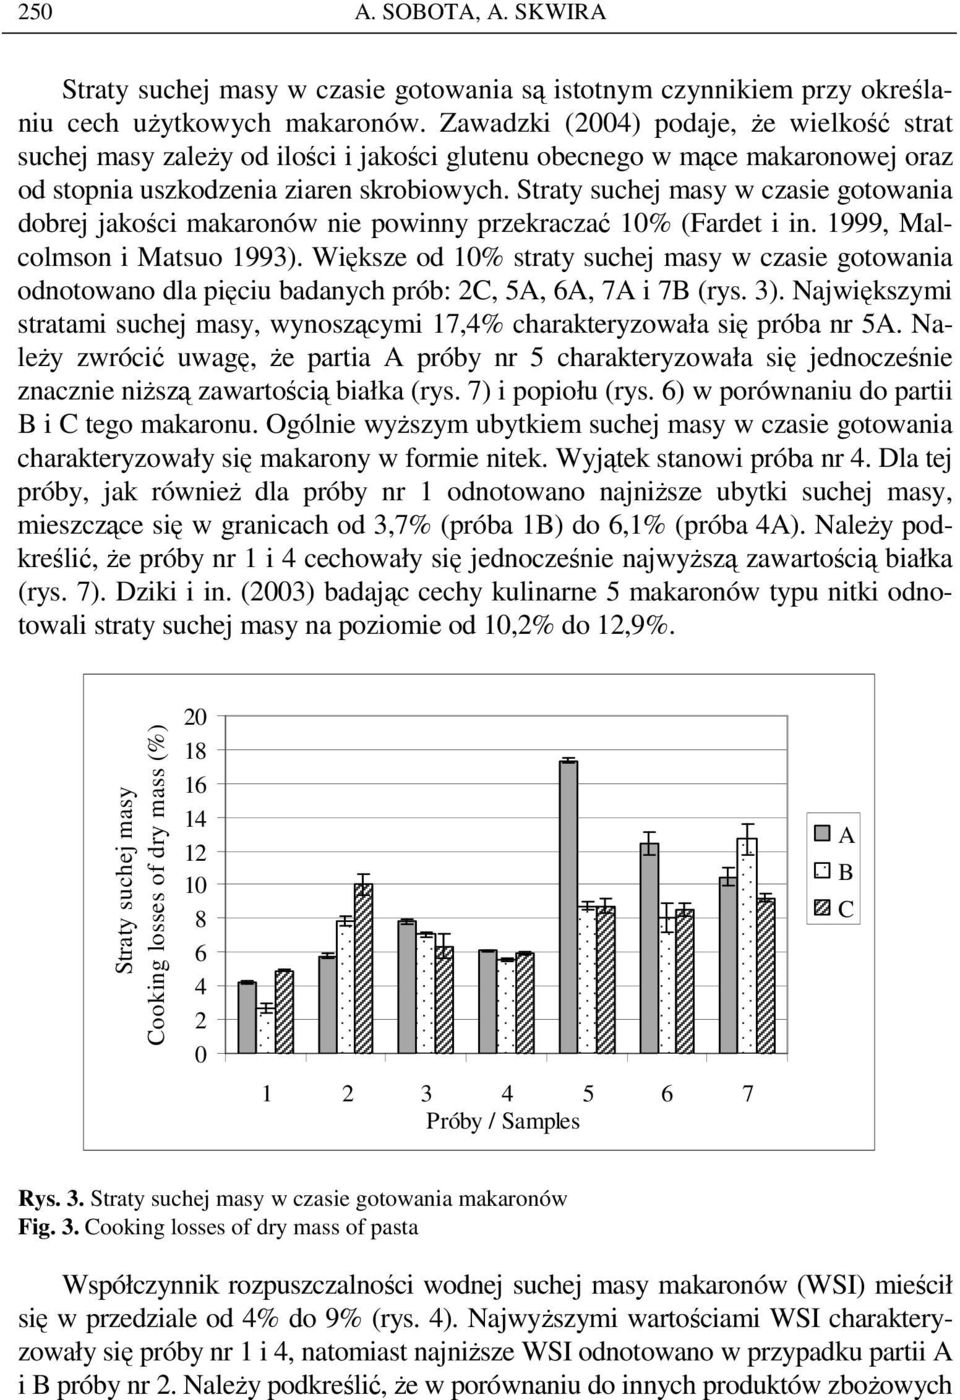 Straty suchej masy w czasie gotowania dobrej jakości makaronów nie powinny przekraczać 1% (Fardet i in. 1999, Malcolmson i Matsuo 1993).